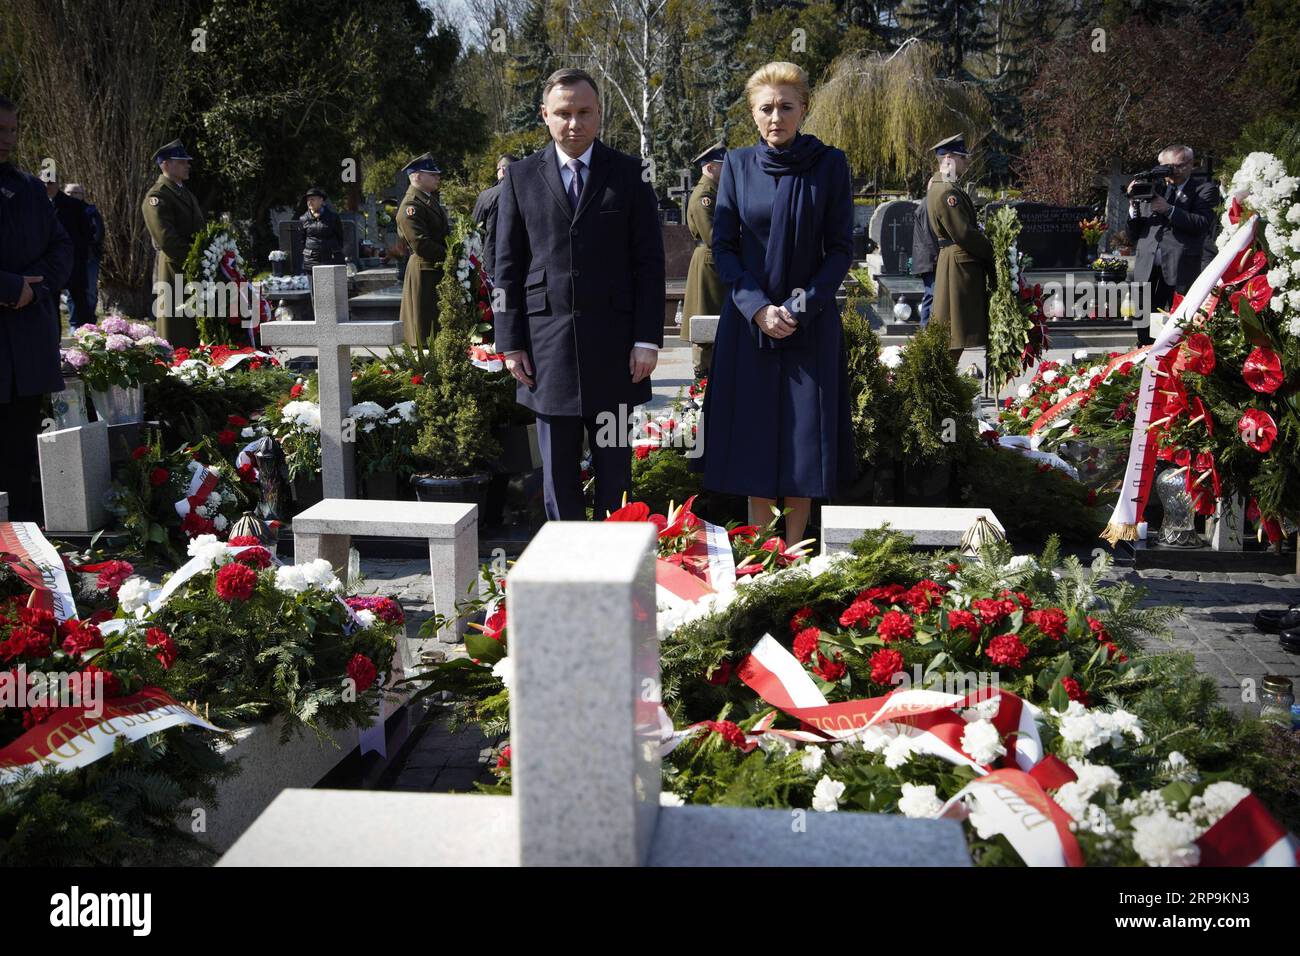 (190410) -- VARSOVIE, le 10 avril 2019 -- le président polonais Andrzej Duda et son épouse Agata Kornhauser-Duda assistent à une cérémonie de commémoration à Varsovie, en Pologne, le 10 avril 2019. Les dirigeants politiques polonais animent tout au long du mercredi une série d événements commémoratifs pour marquer le neuvième anniversaire de l accident d avion de Smolensk, qui a tué 96 personnes, dont l ancien président polonais Lech Kaczynski. POLOGNE-VARSOVIE-SMOLENSK CRASH-ANNIVERSAIRE-COMMÉMORATION JAAPXARRIENS PUBLICATIONXNOTXINXCHN Banque D'Images